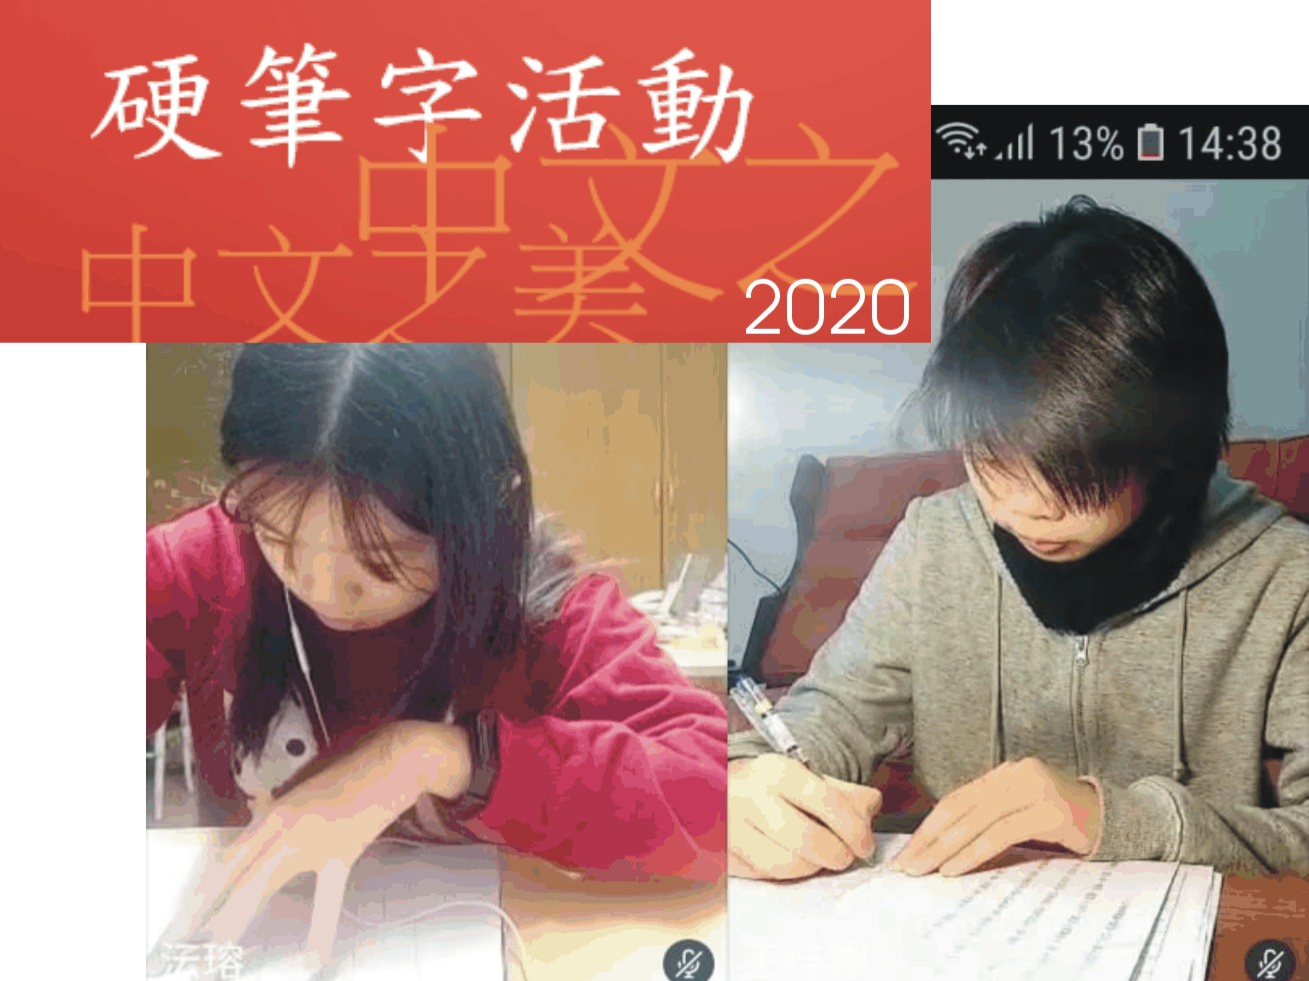 華興中文學校  2020 硬筆字活動圖片